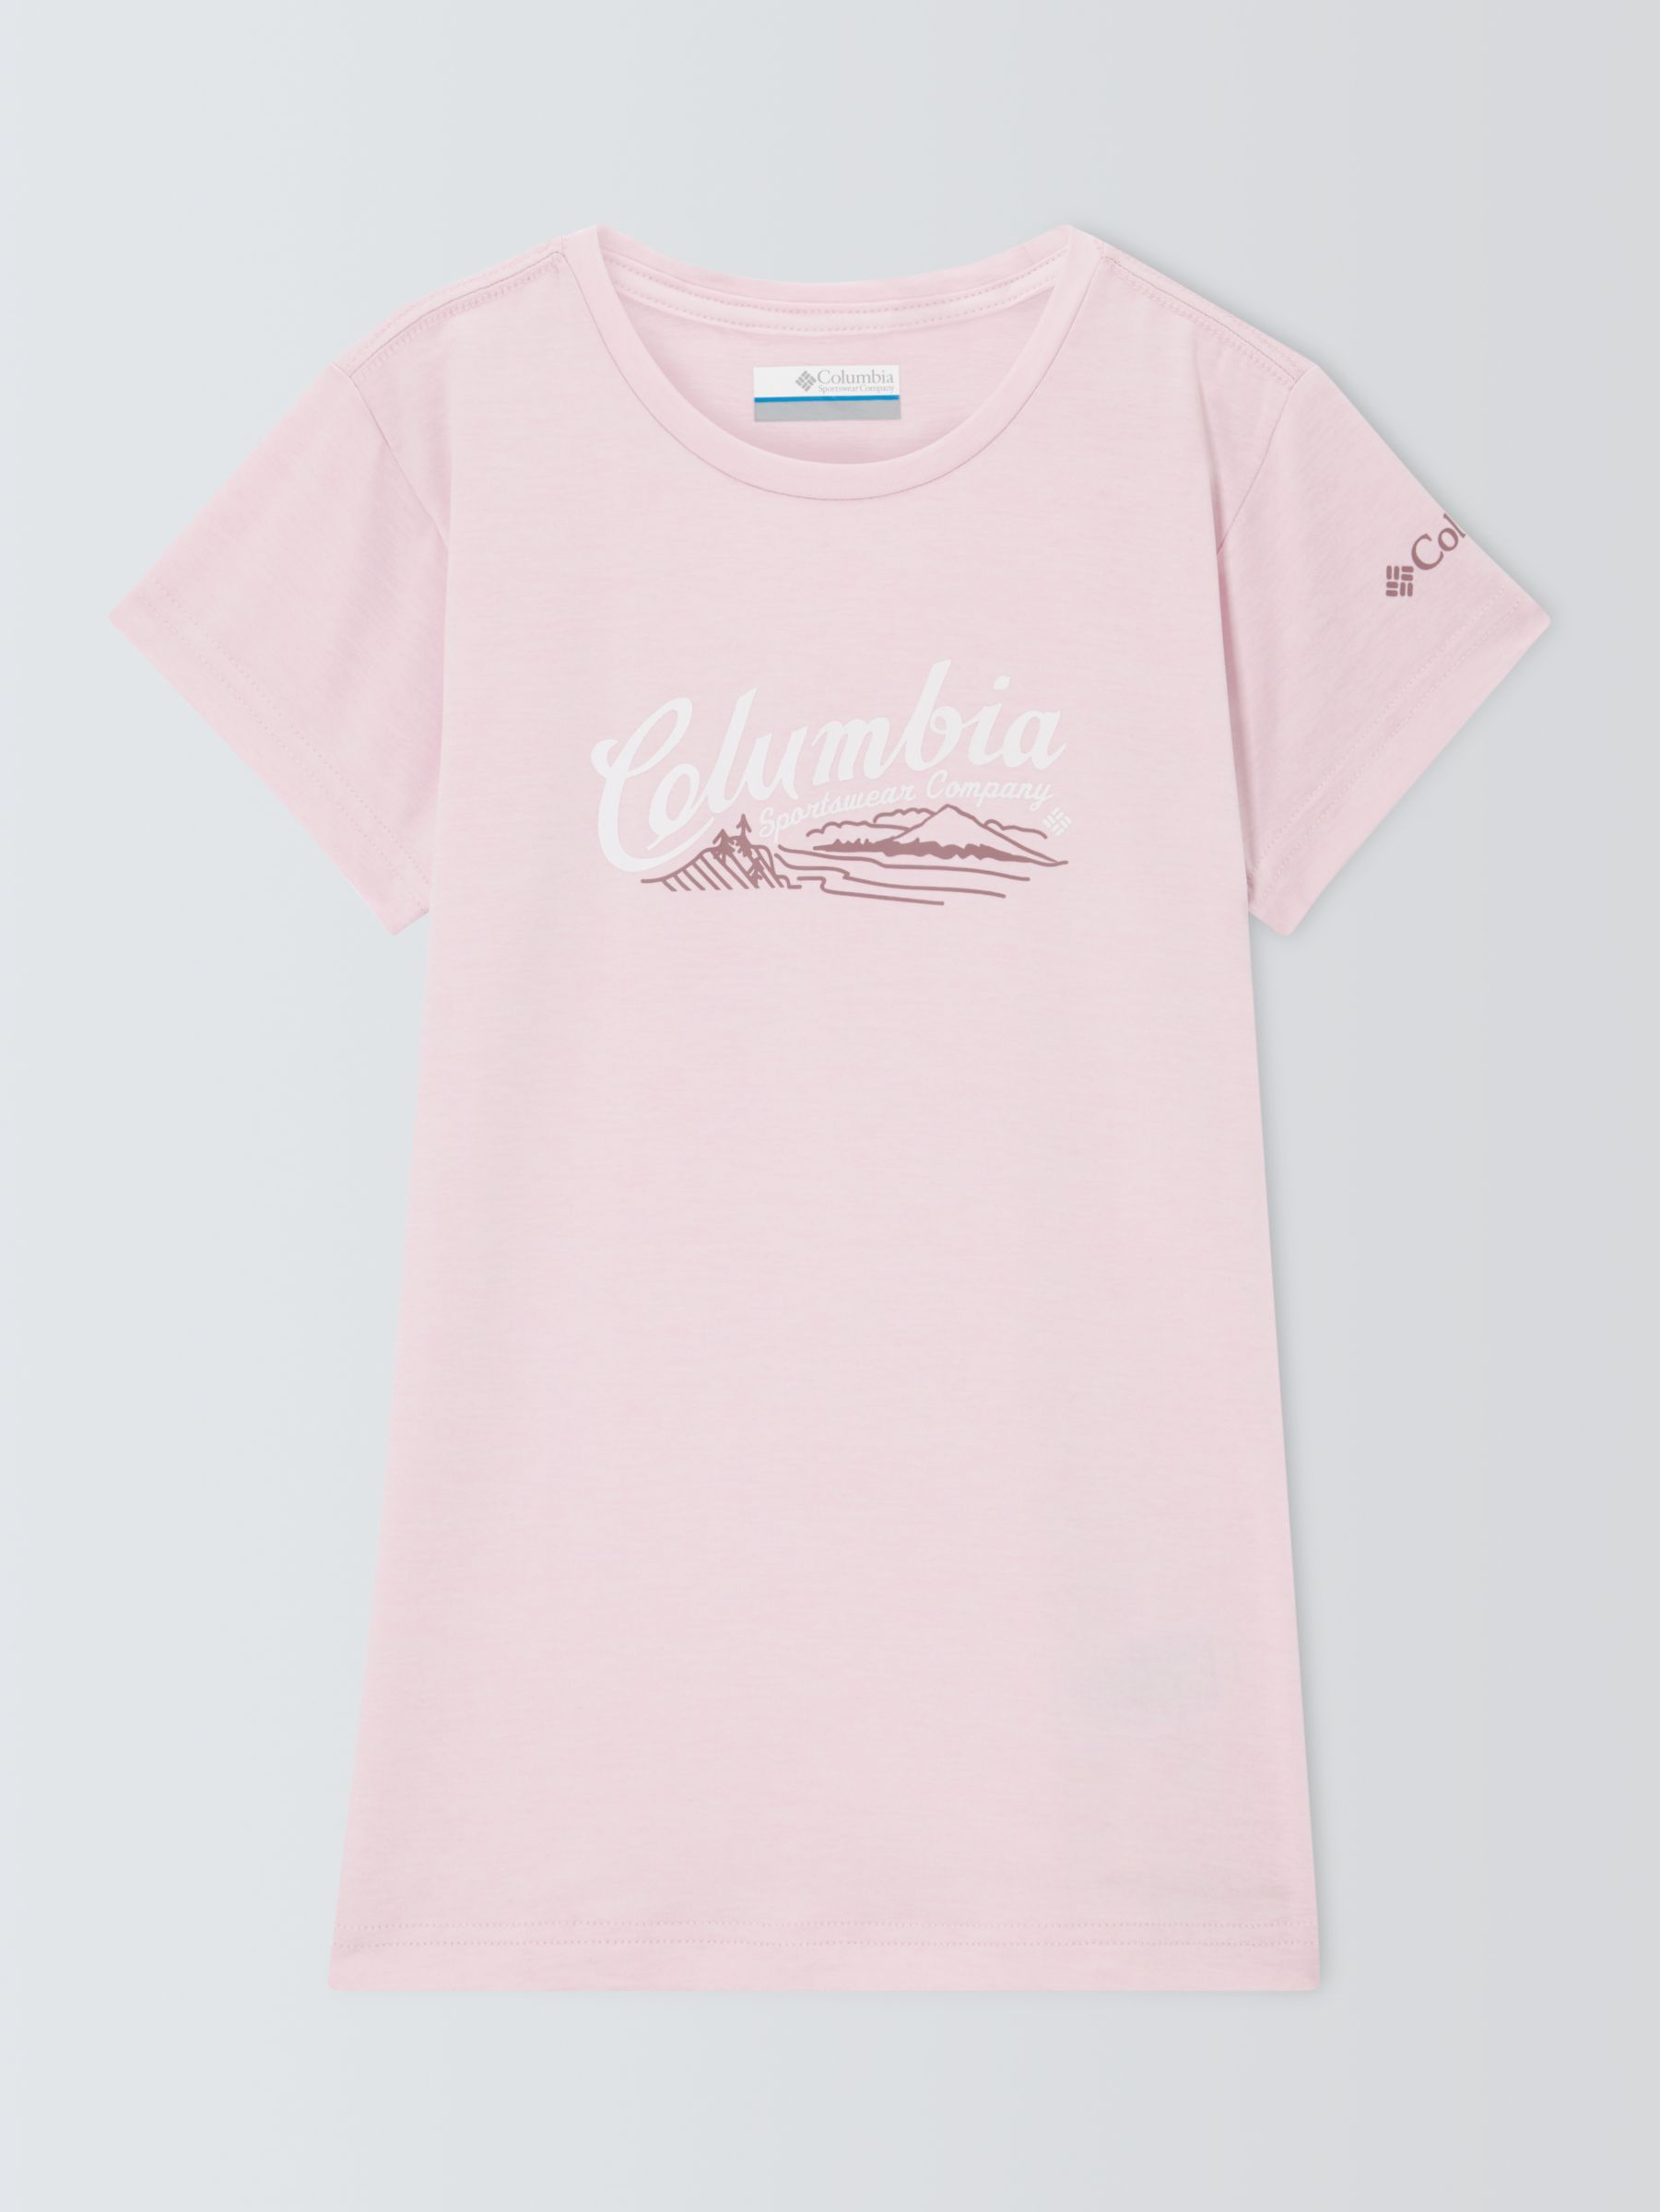 Columbia Kids' Mission Peak Omni-Wick™ T-Shirt, Light Pink